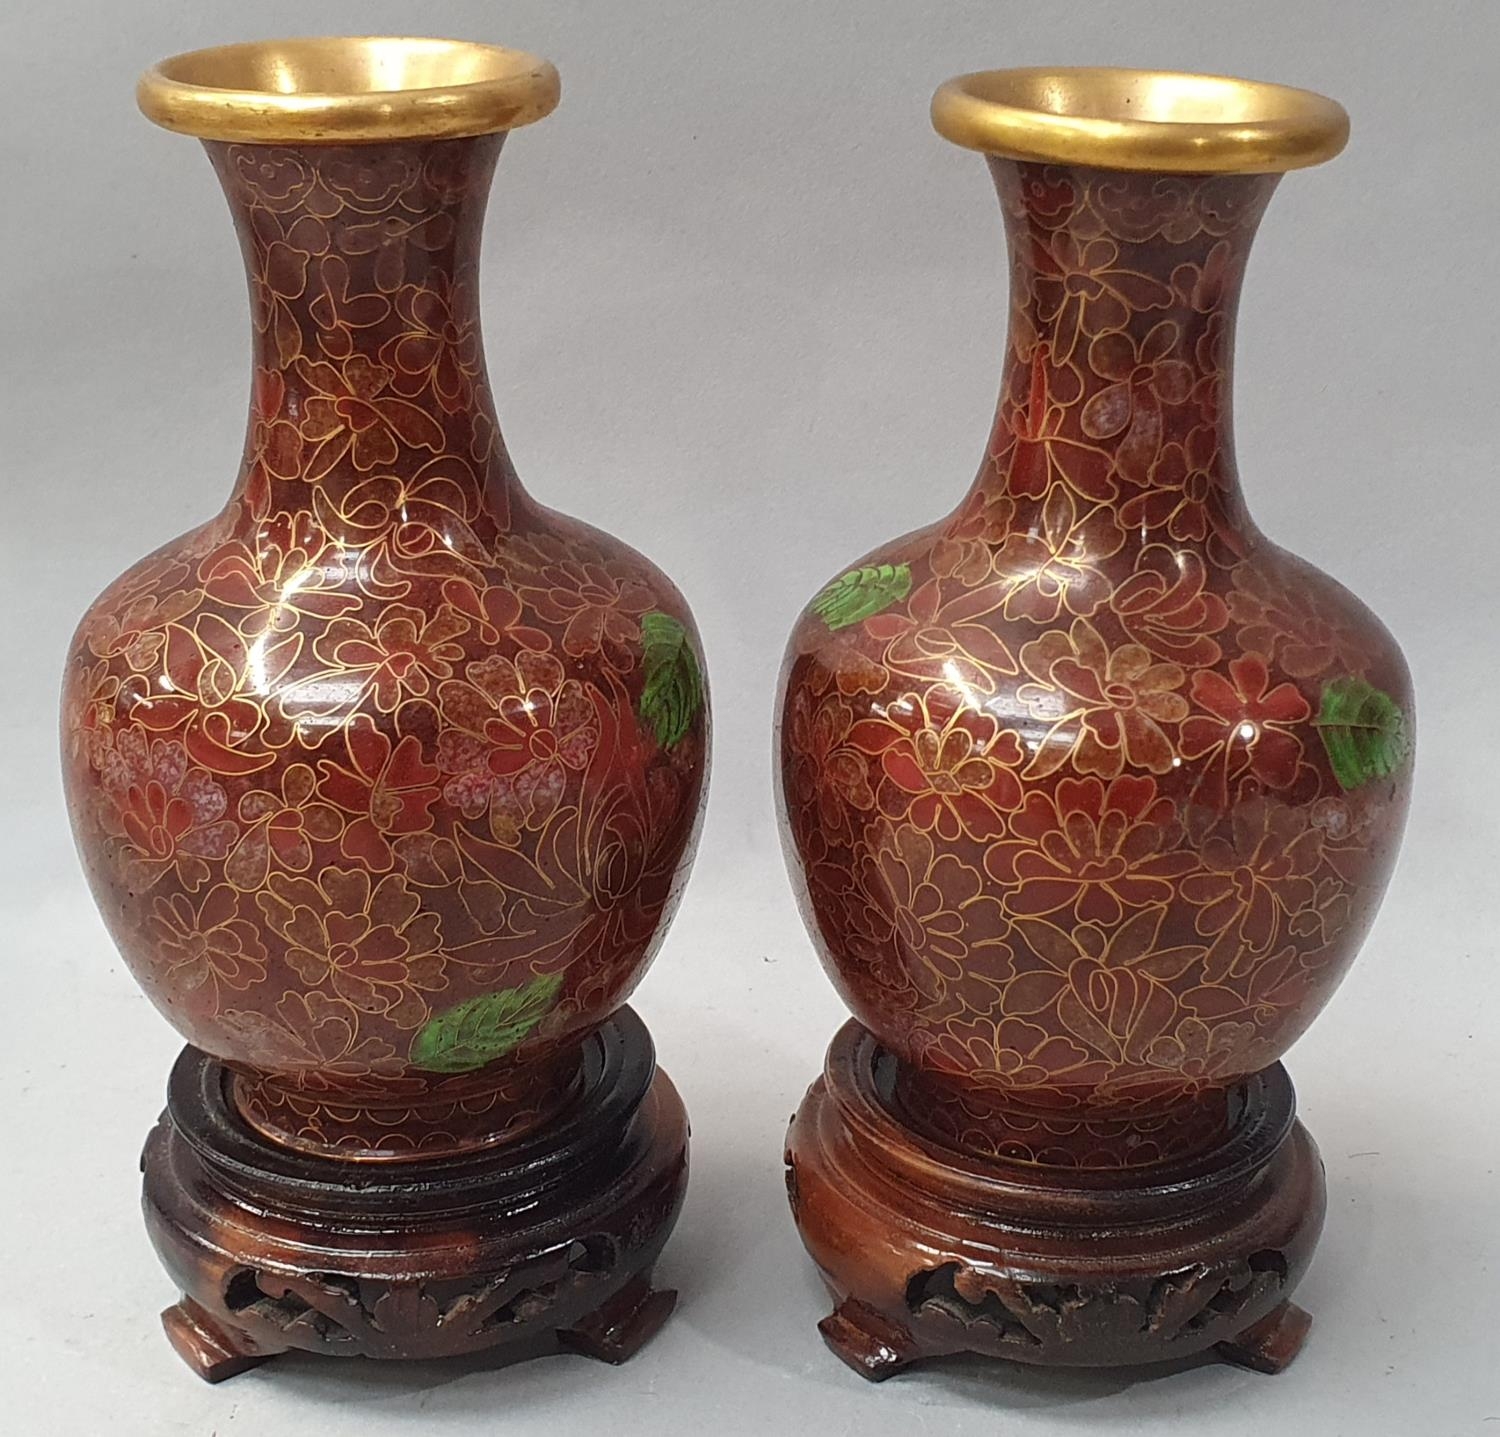 Pair of Cloisonné vases.